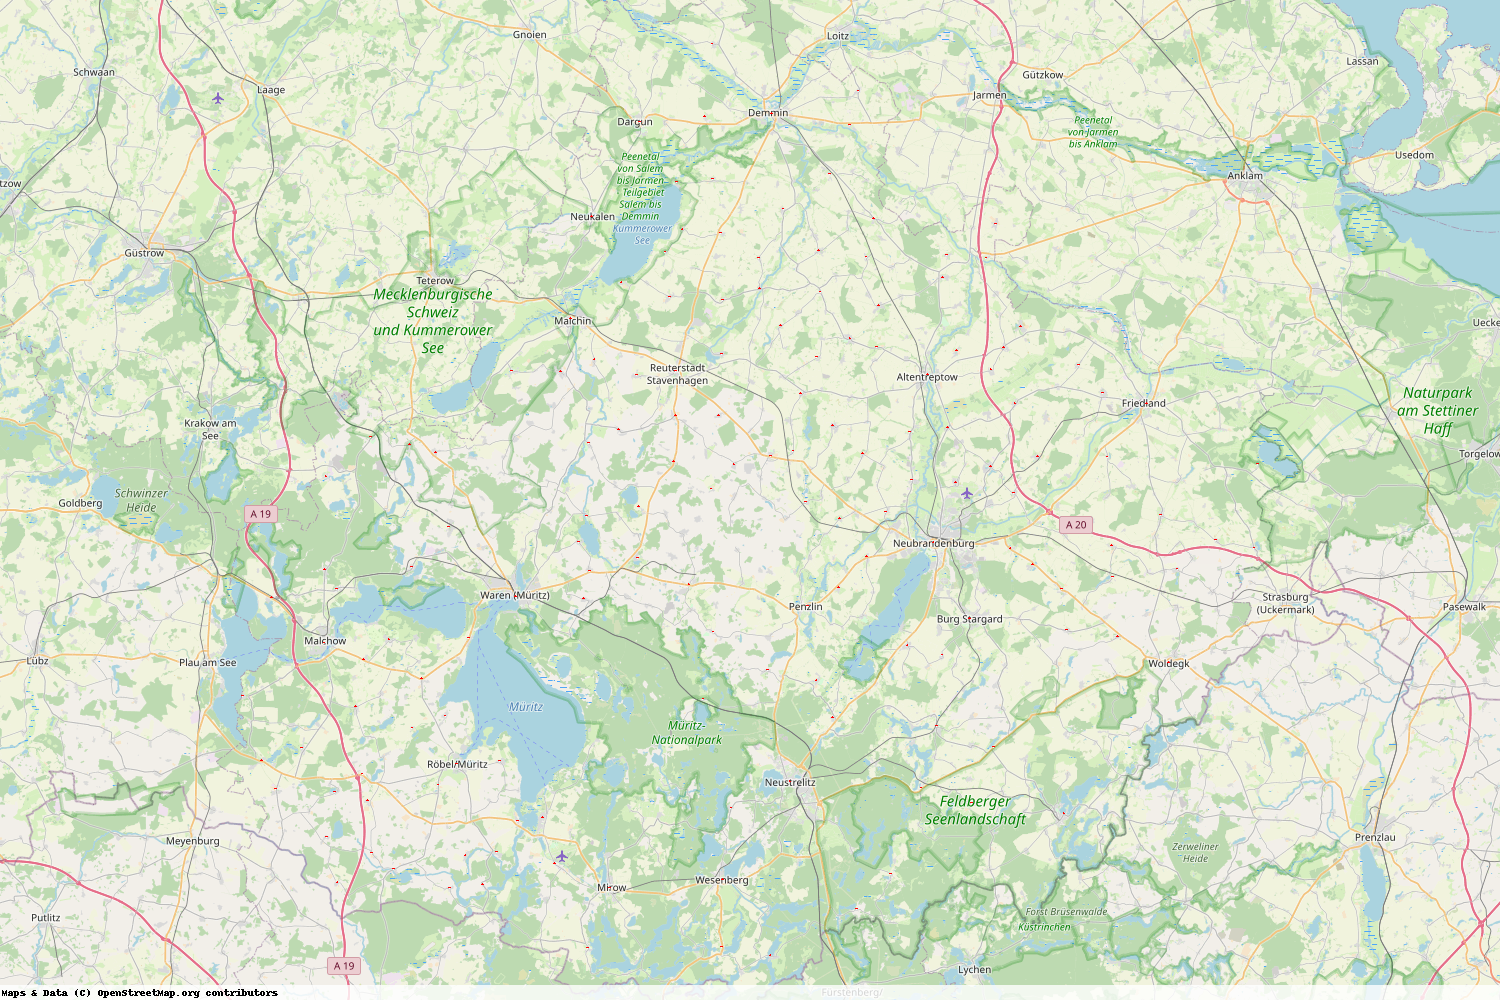 Ist gerade Stromausfall in Mecklenburg-Vorpommern - Mecklenburgische Seenplatte?